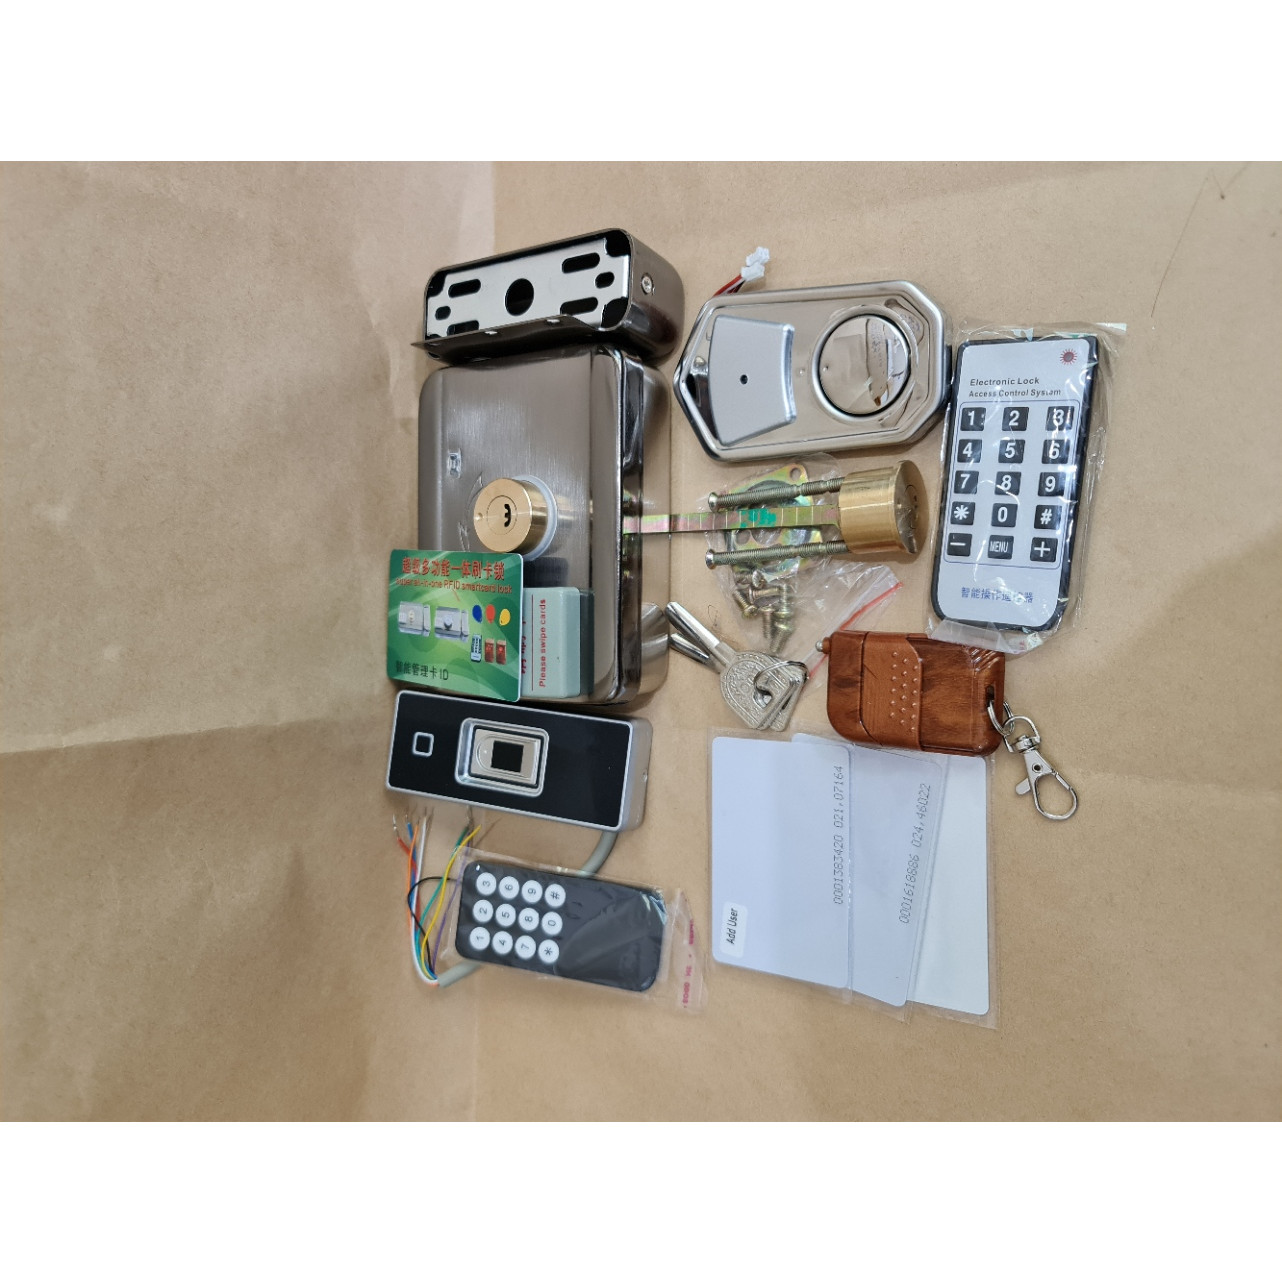 Bộ Ổ khóa điện tử kèm remote điều khiển , kết hợp với đầu đọc vân tay và thẻ từ trắng sử dụng cho cửa NHÔM